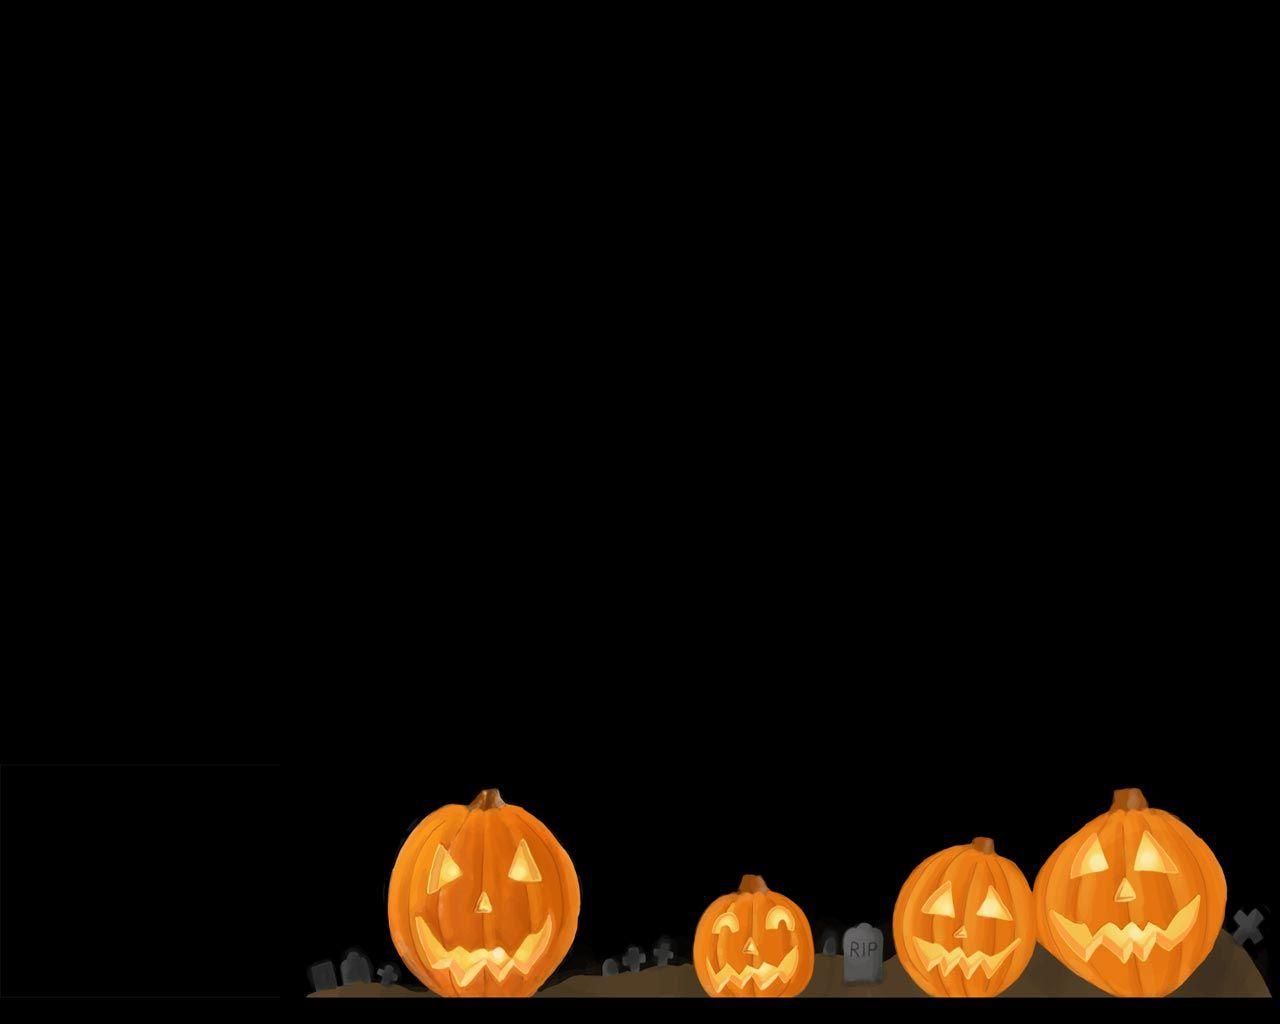 Free Halloween Desktop Wallpaper, Halloween Background Wallpaper